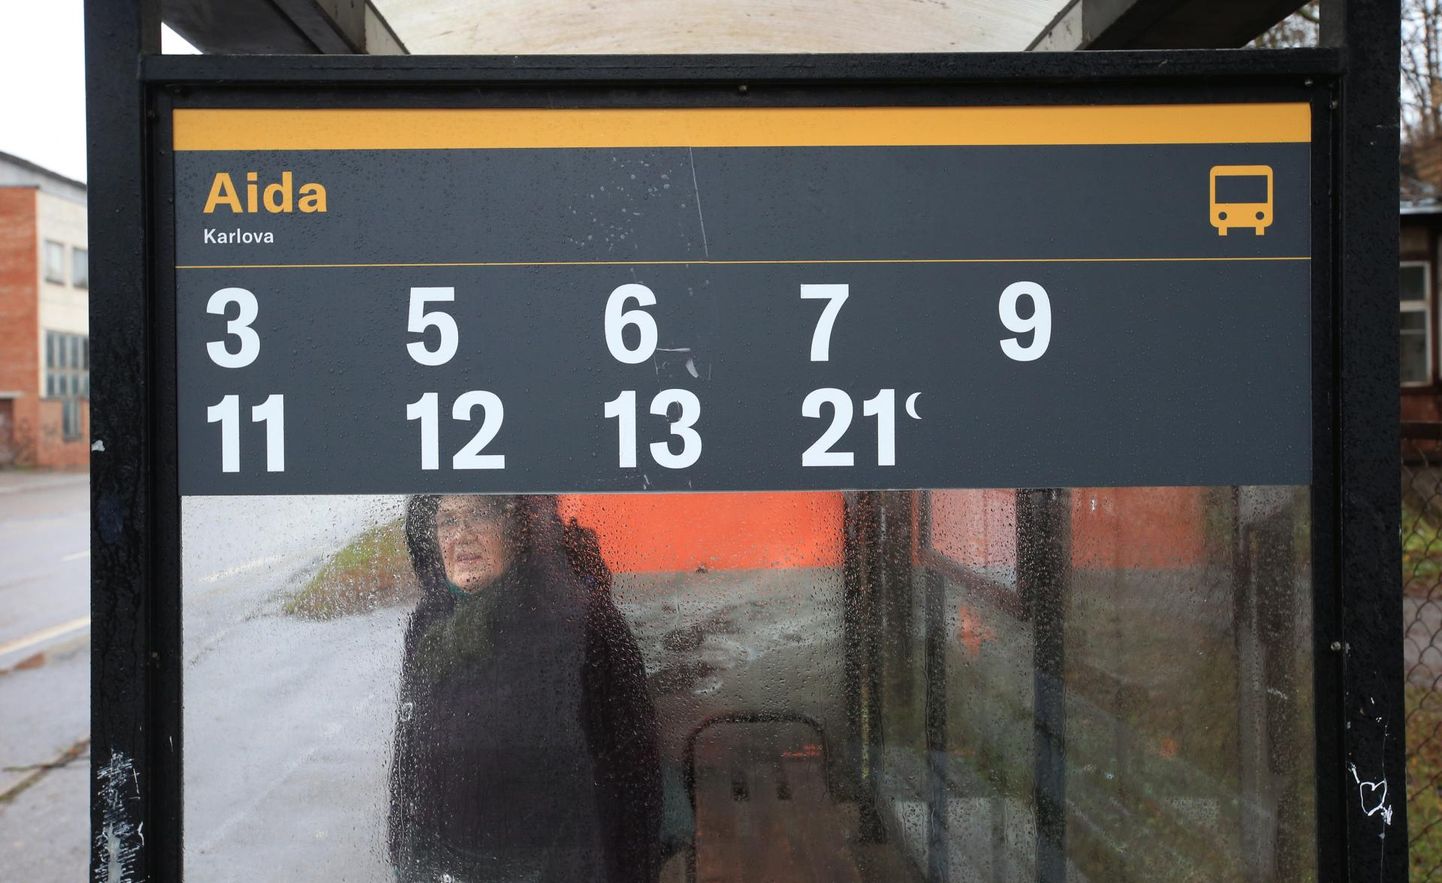 Tartlane Aini Laas kiitis eile Aida peatuses bussi oodates, et uue kujunduse puhul on juba eemalt näha, mis number bussid sealt sõidavad.